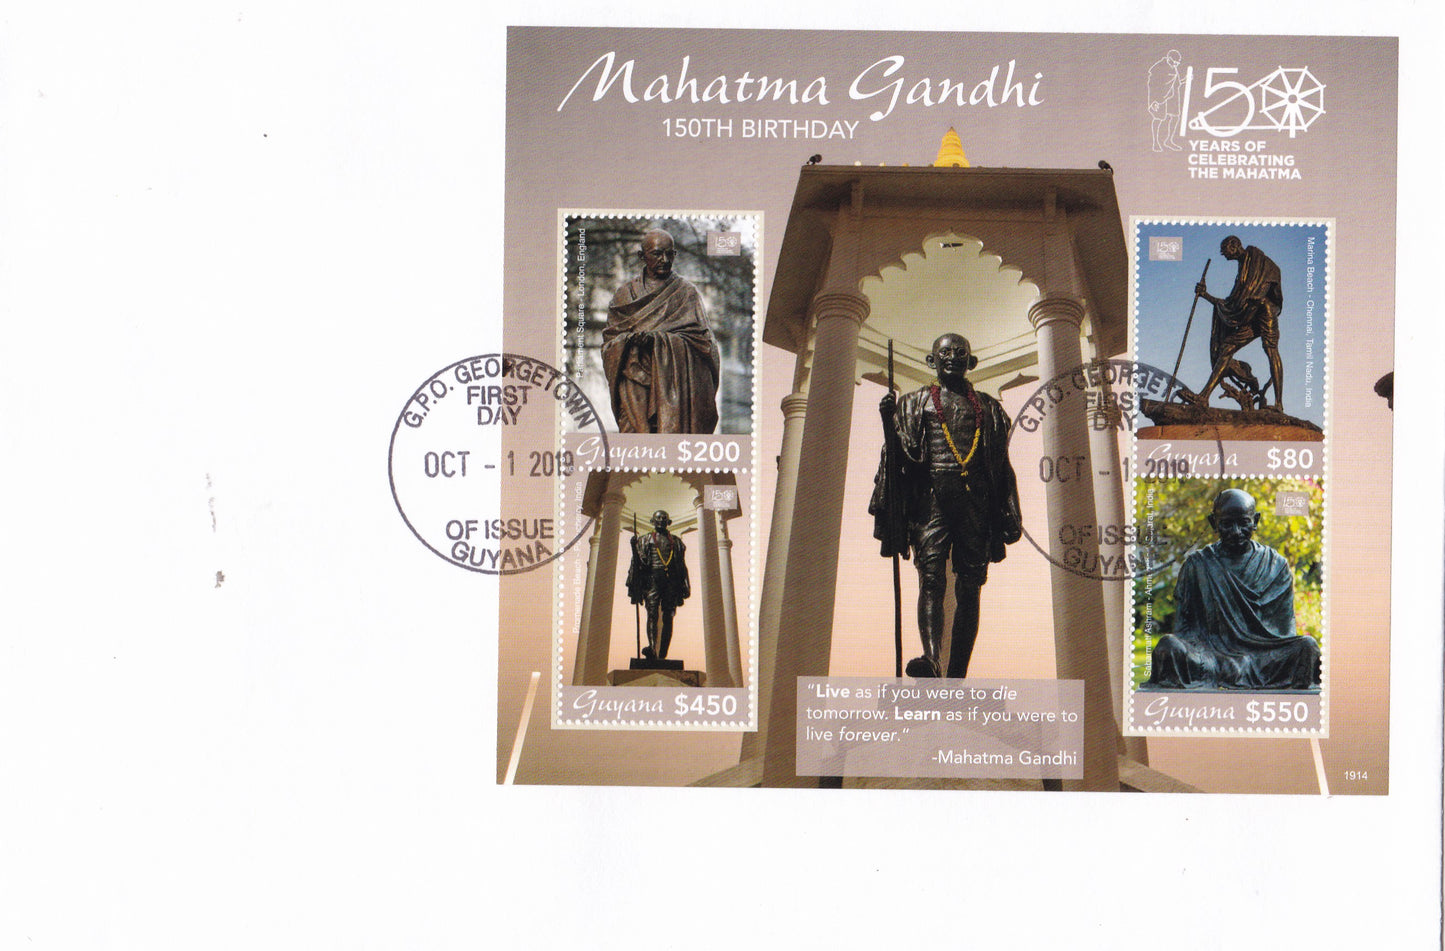 गुयाना-महात्मा गांधी एफडीसी की 150वीं जयंती